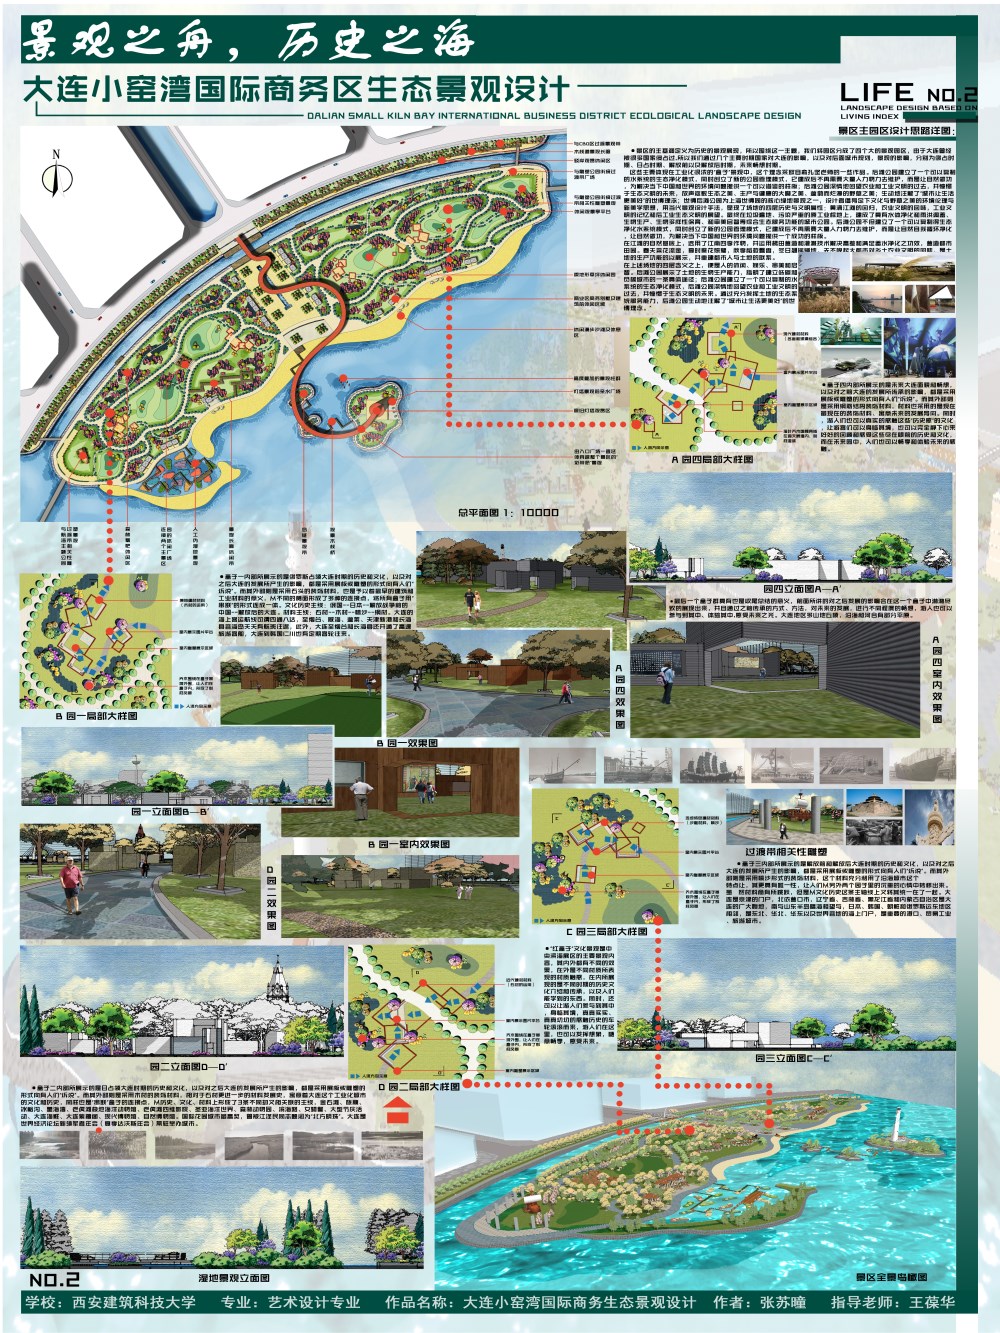 大连小窑湾国际商务区生态景观设计-2